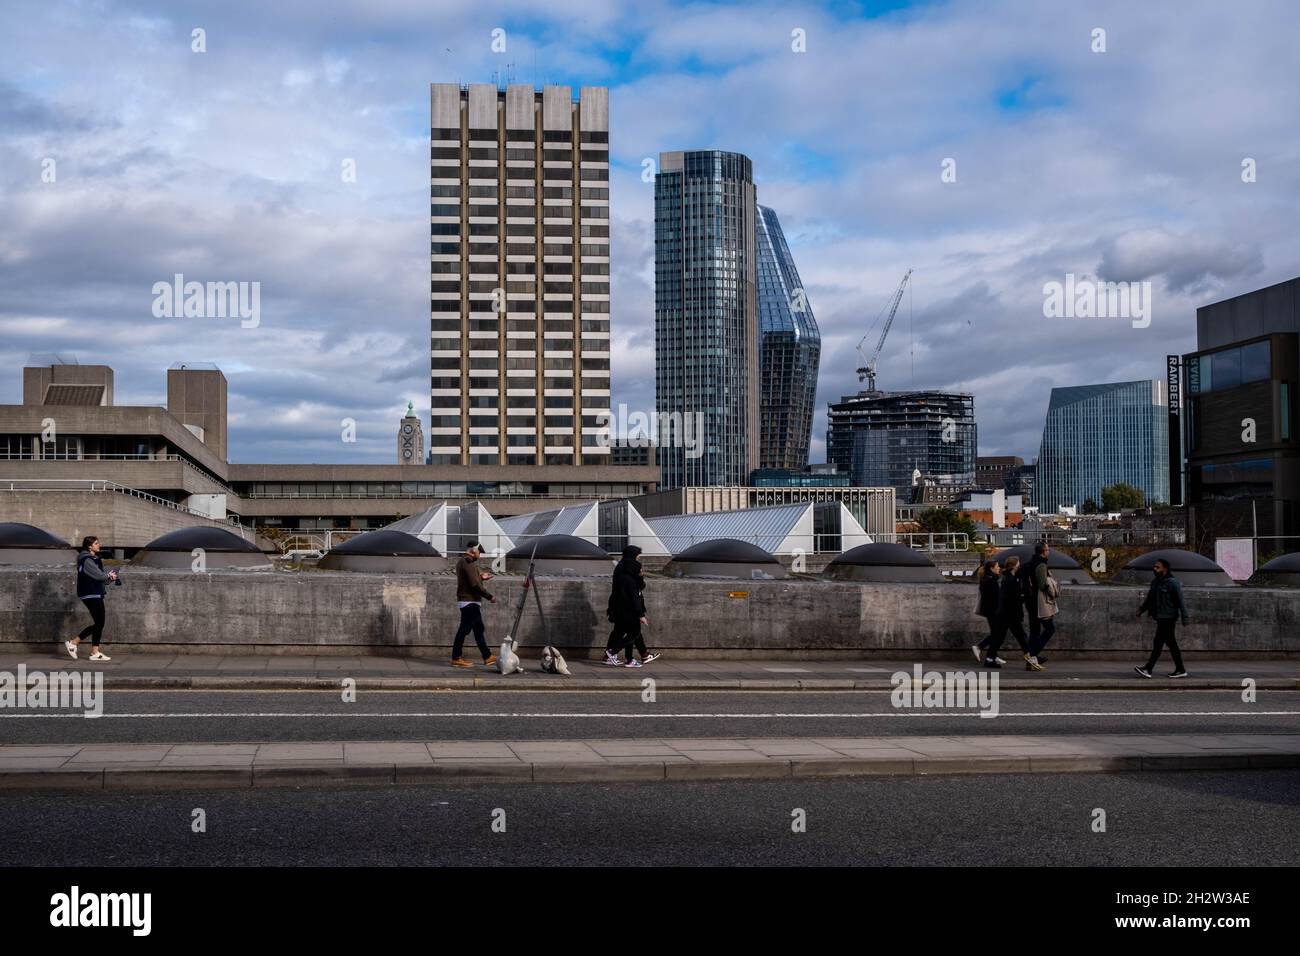 Hochhaus-Immobilienentwicklung in South Bank Londong England von WaterlooBridge aus Stockfoto